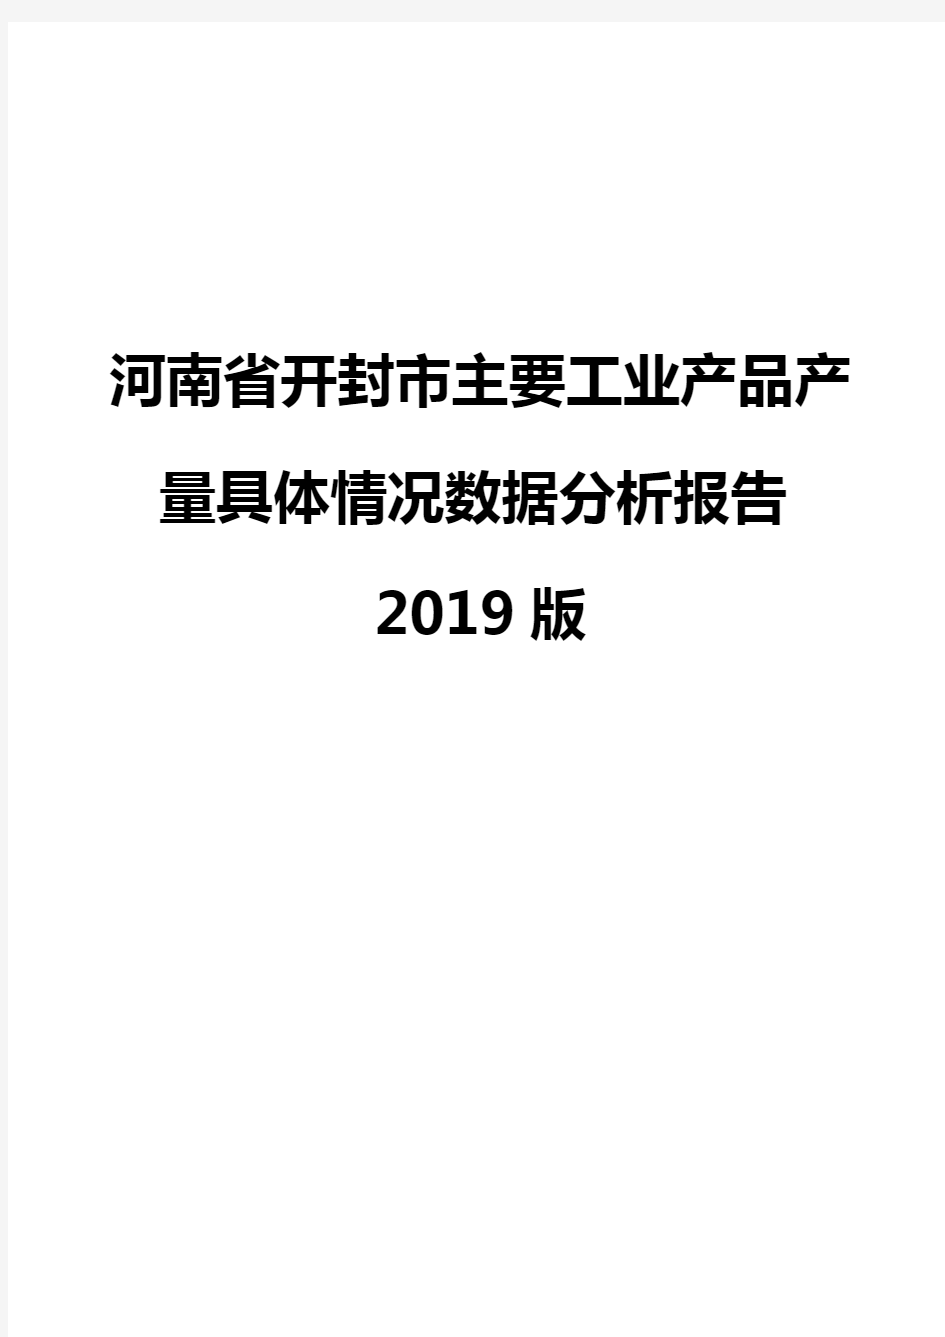 河南省开封市主要工业产品产量具体情况数据分析报告2019版